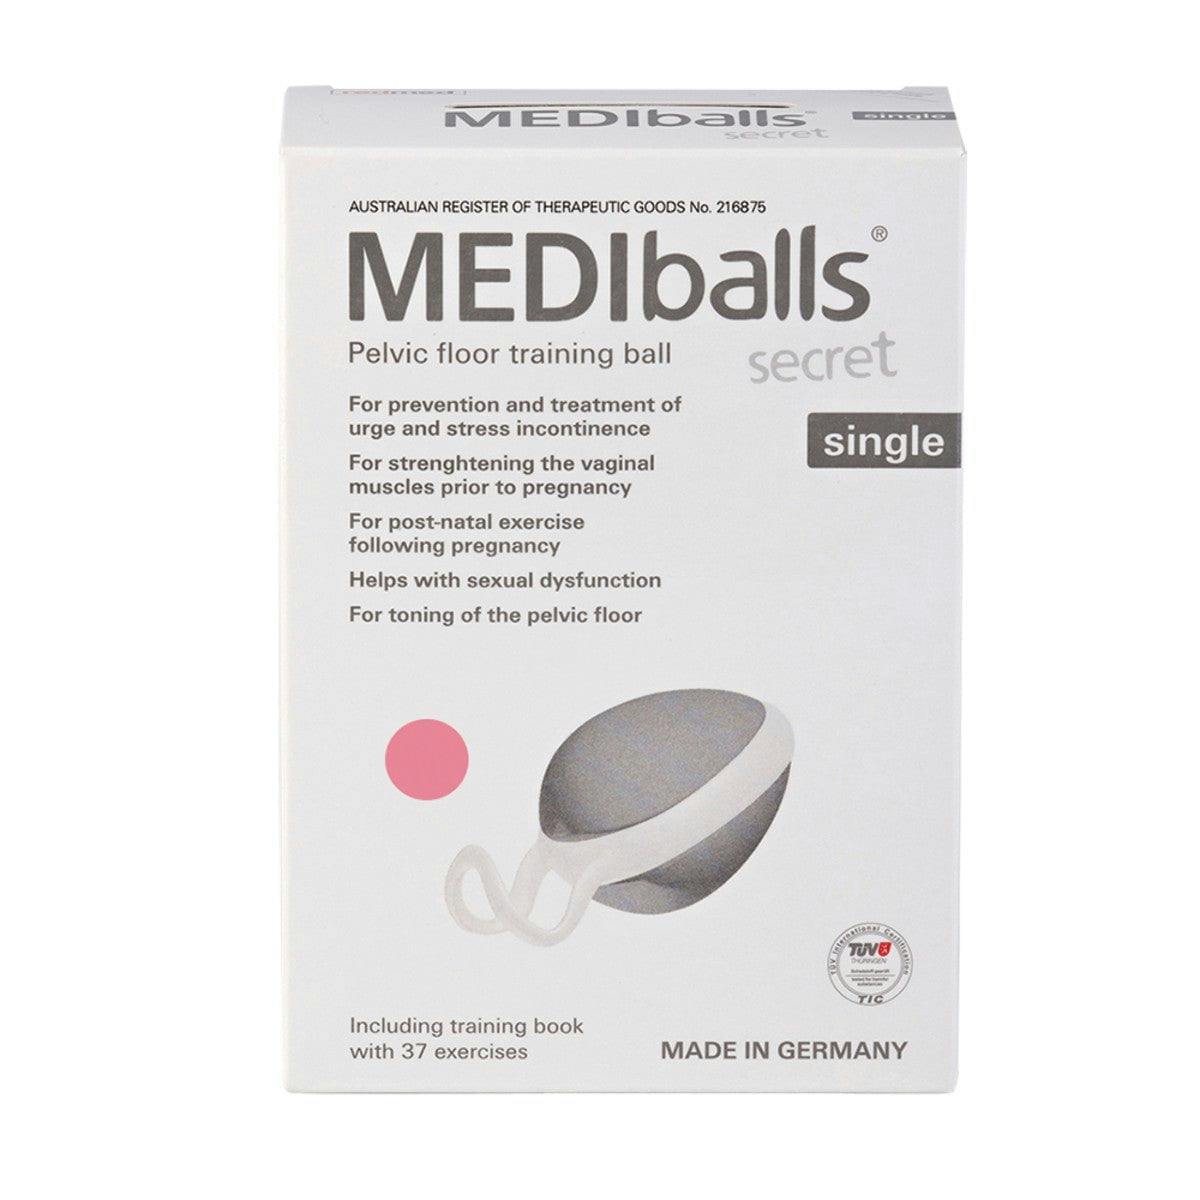 Pelvi Mediballs Secret (Pelvic Floor Training Balls) Single